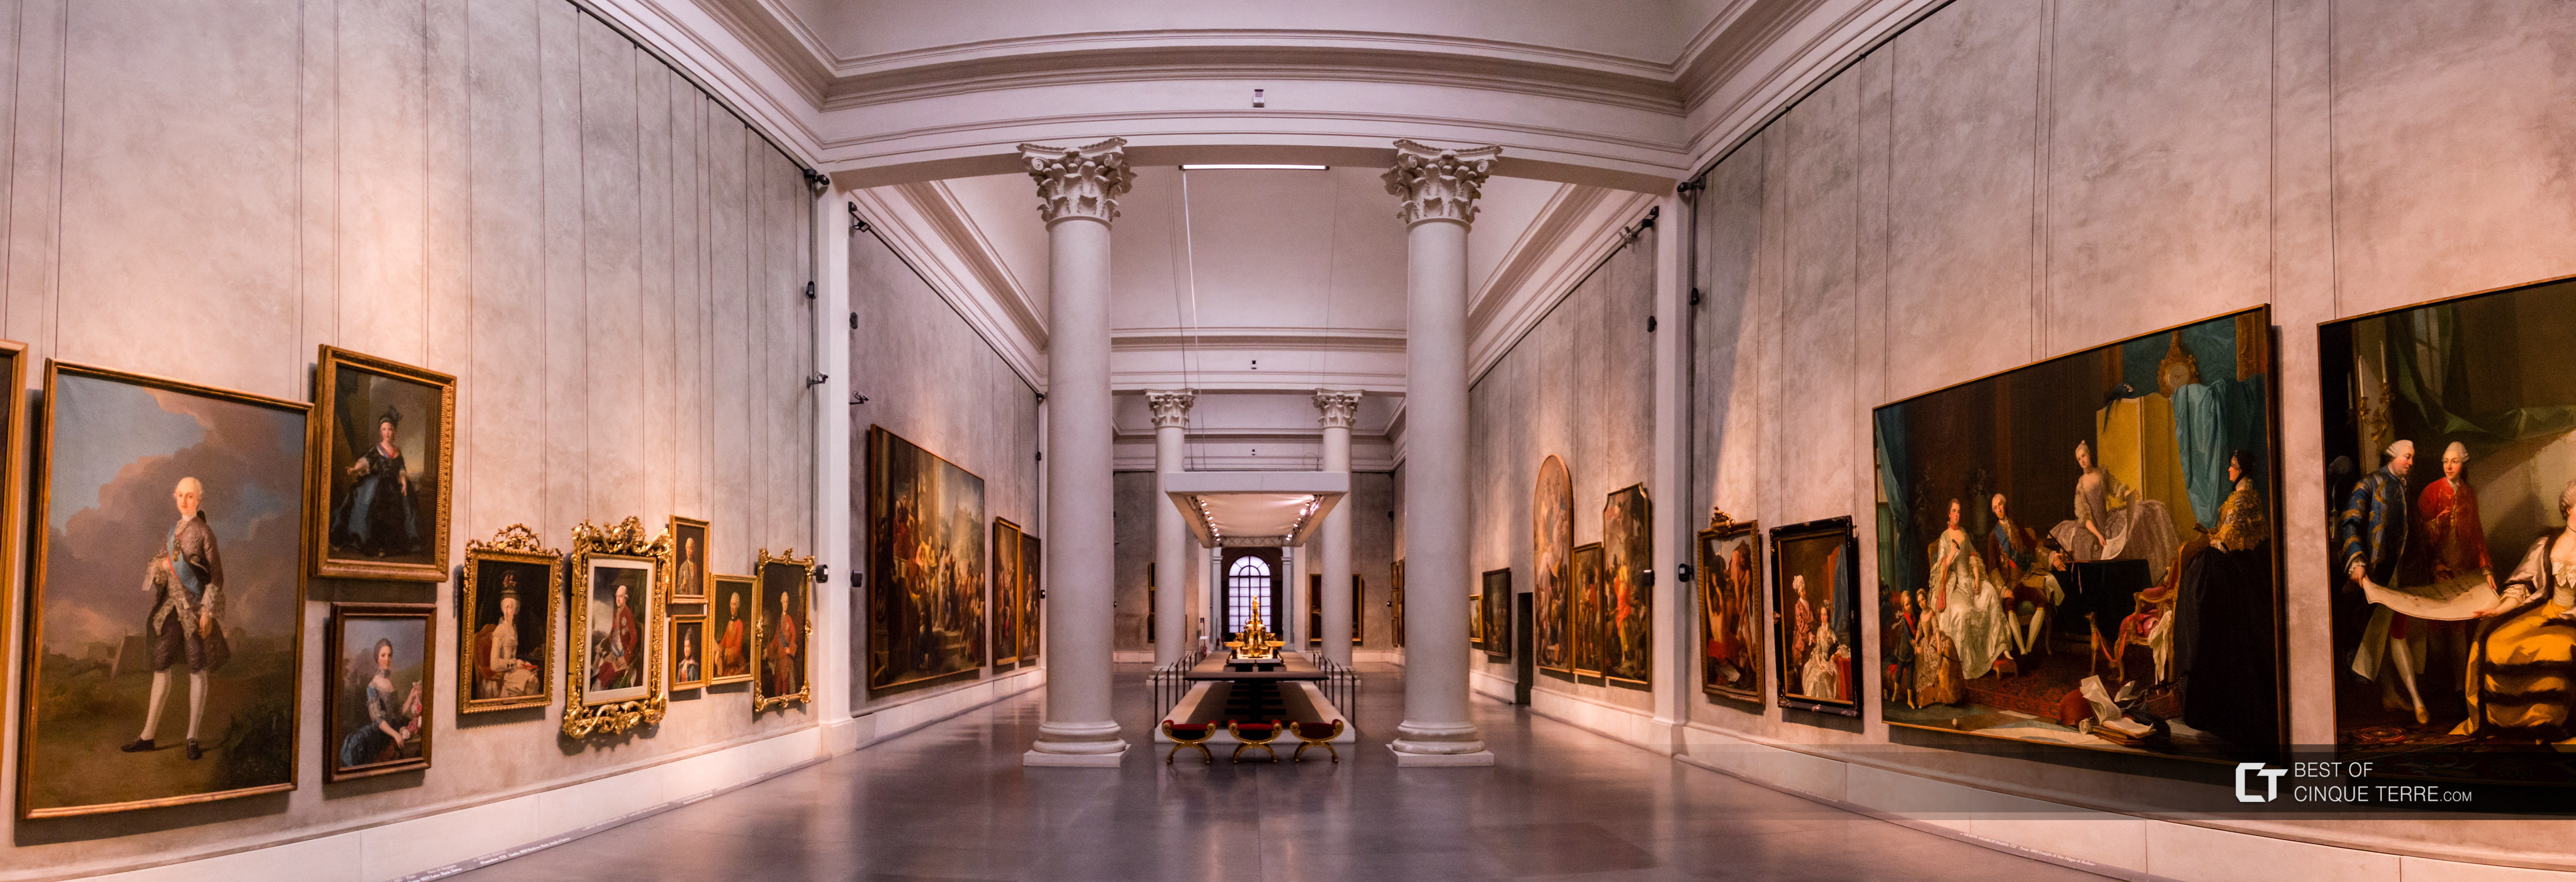 Galería Nacional, Parma, Italia